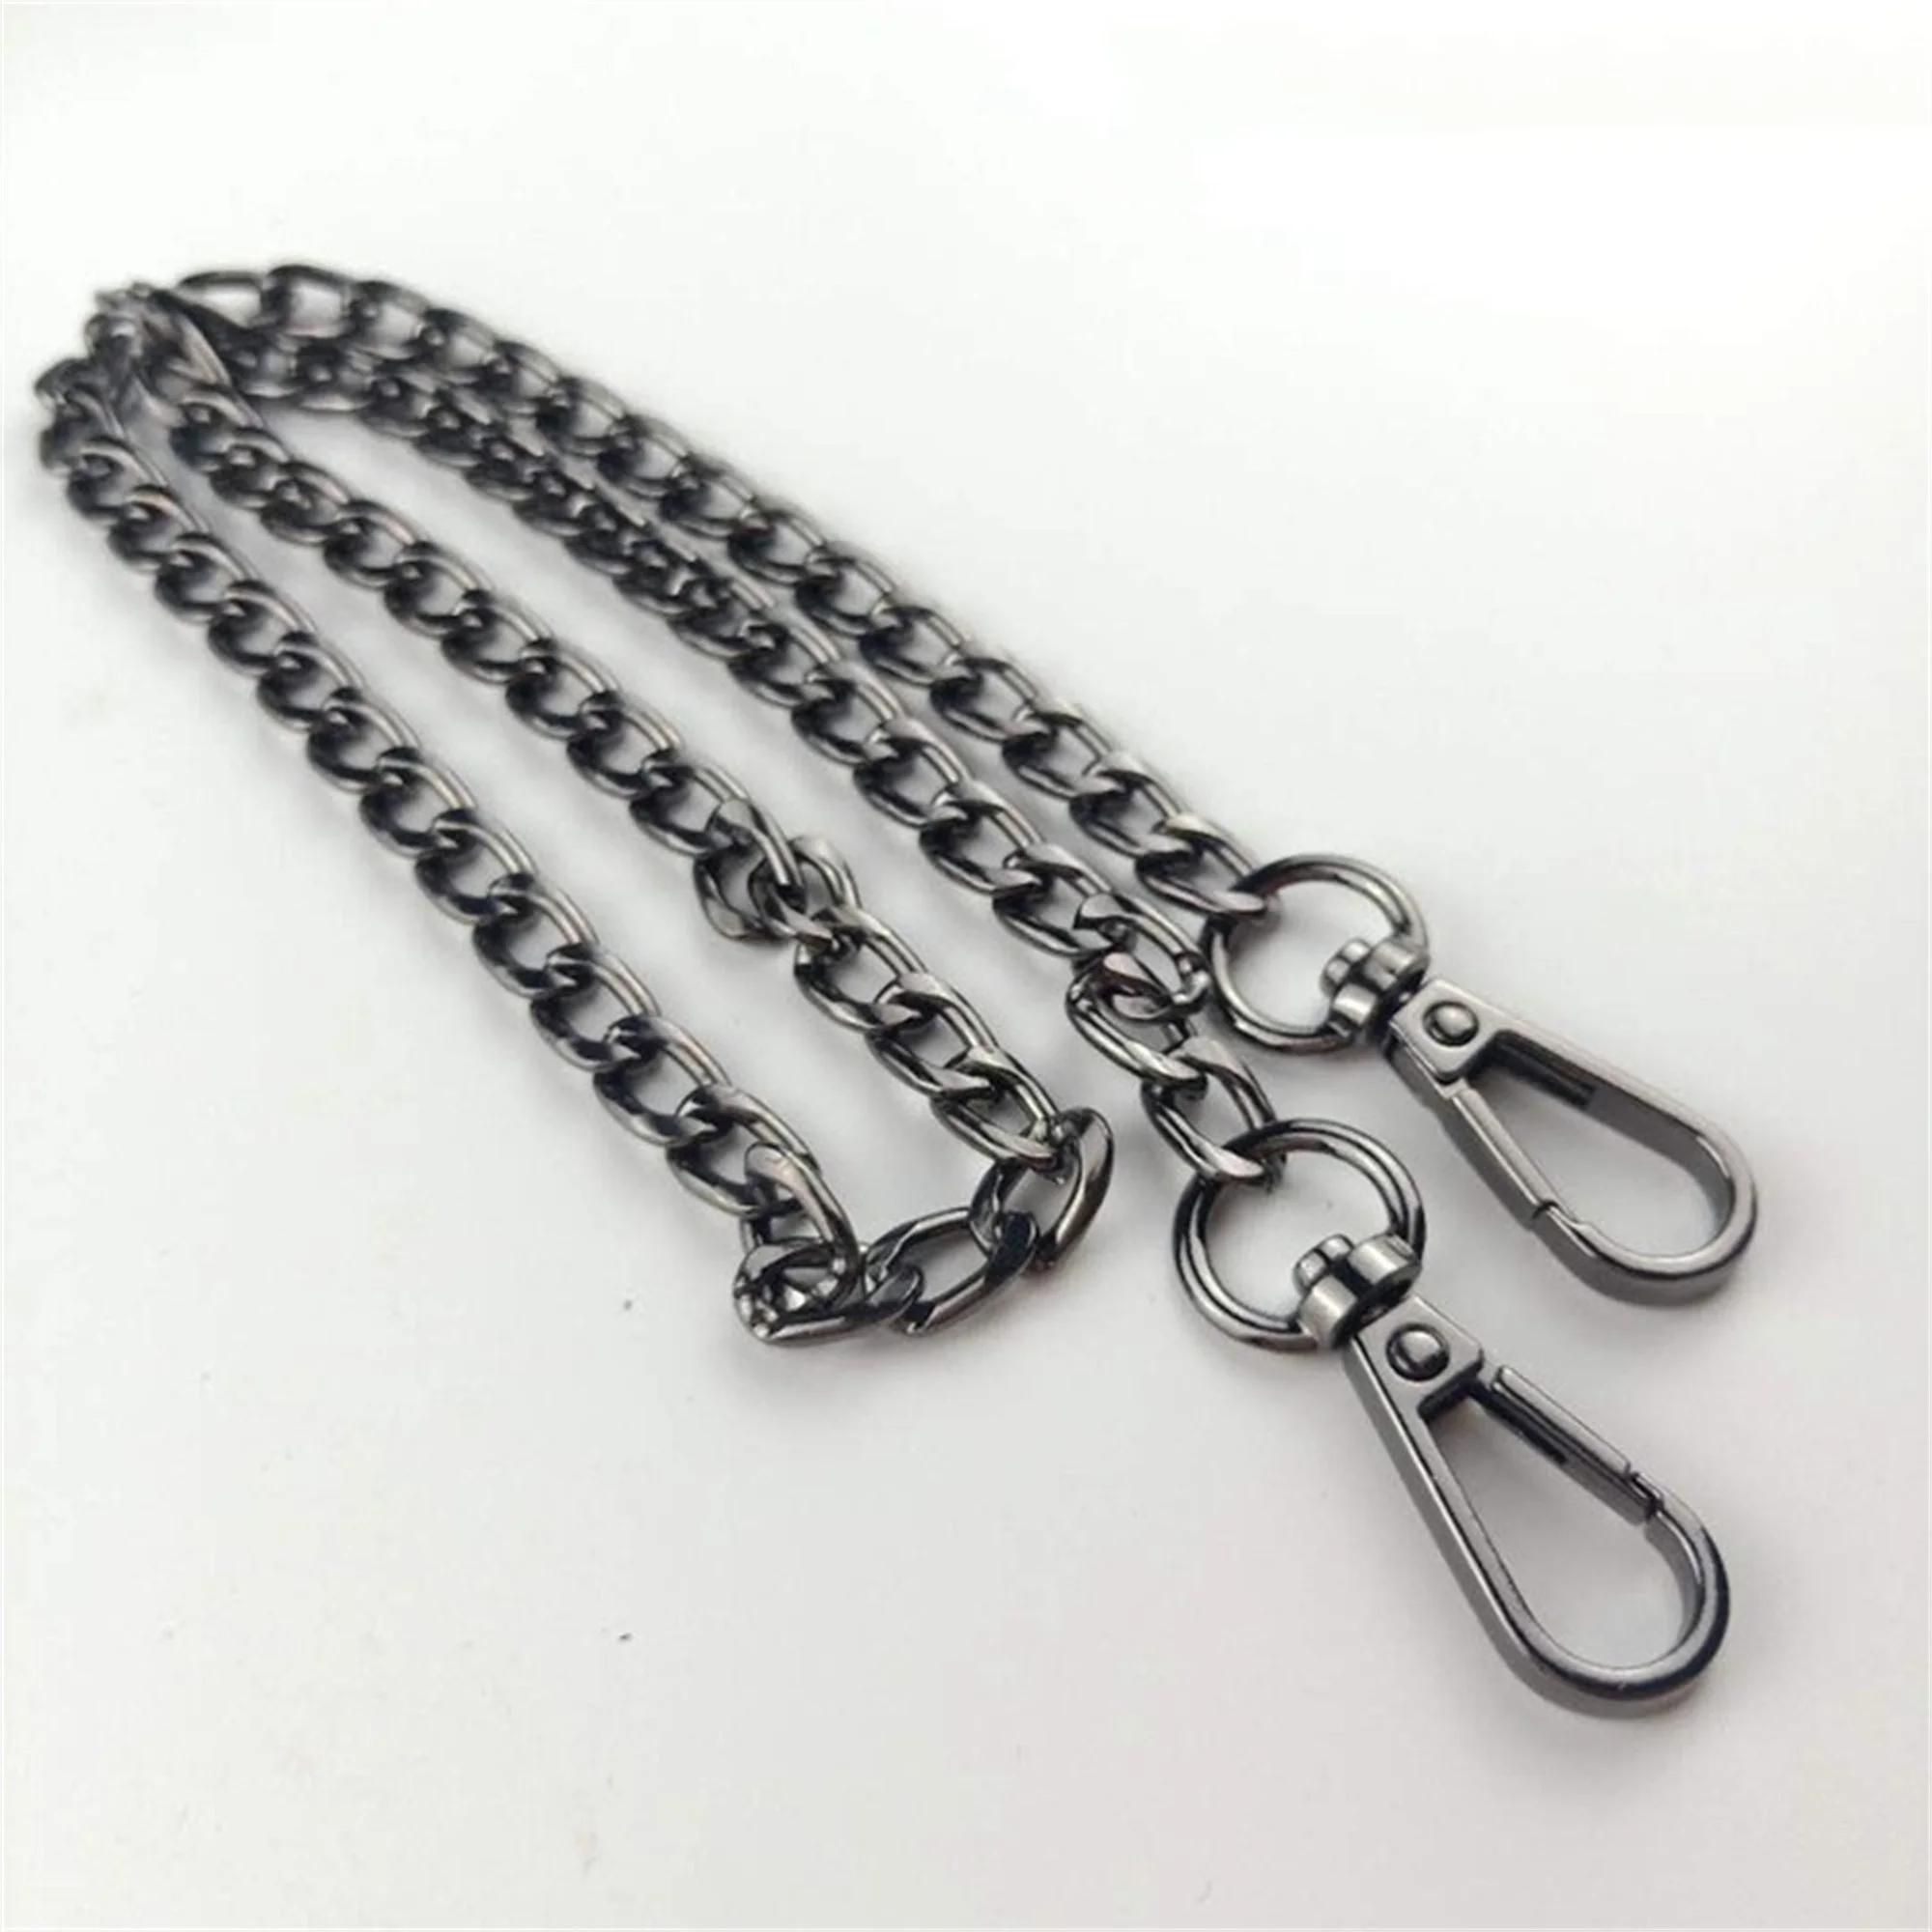 5 Pcs 40/60/120CM Metal Purse Chain Strap Handle Replacement Handbag Shoulder Bag Chain Accessories Light Gold/Silver/Gun Black/ images - 6